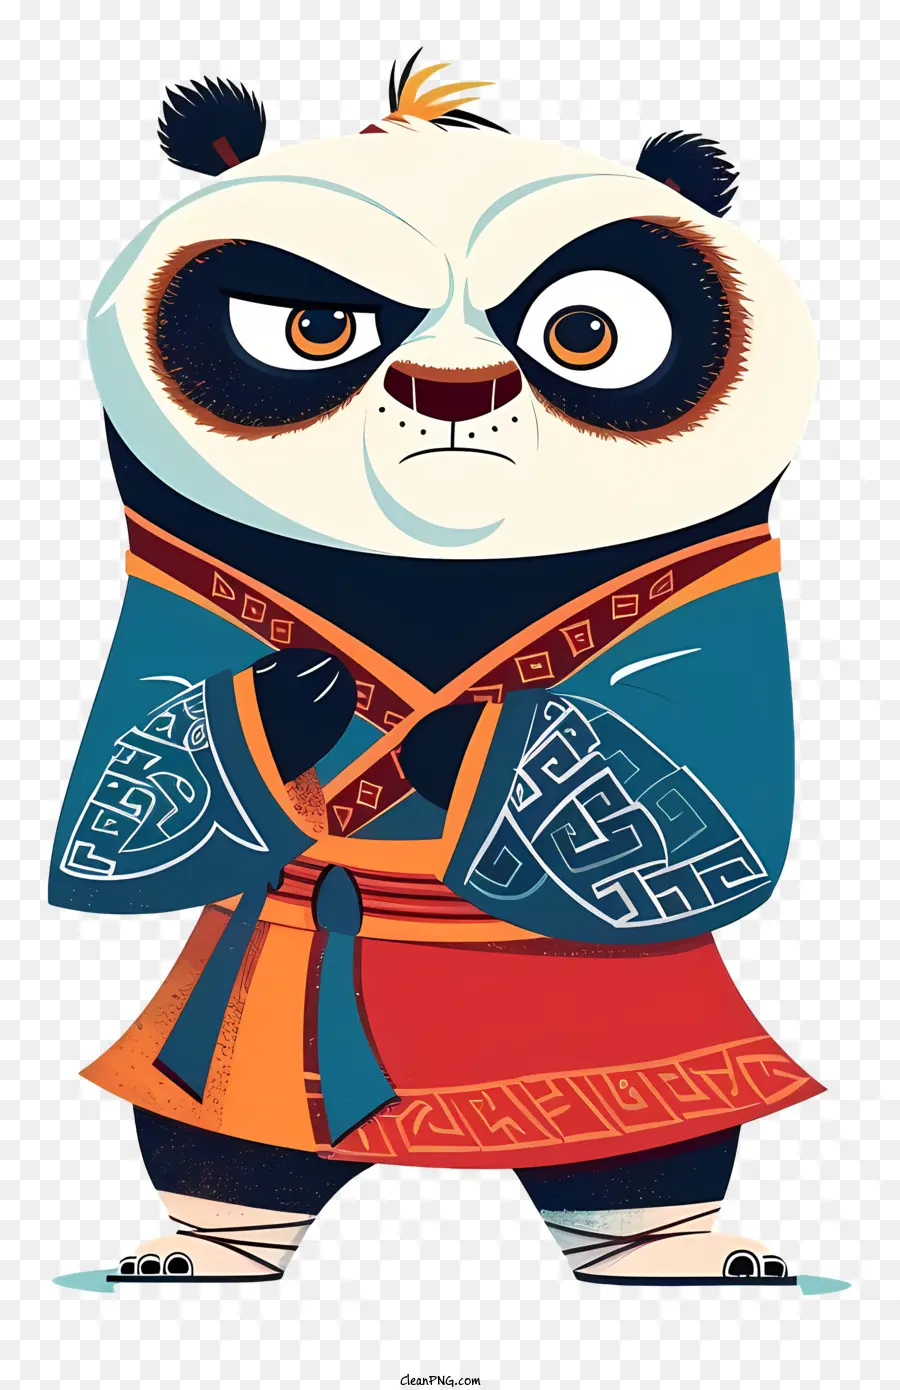 Kung Fu Panda hoạt hình Panda Red áo choàng màu xanh - Phim hoạt hình gấu trúc trong áo choàng màu đỏ giữ vũ khí